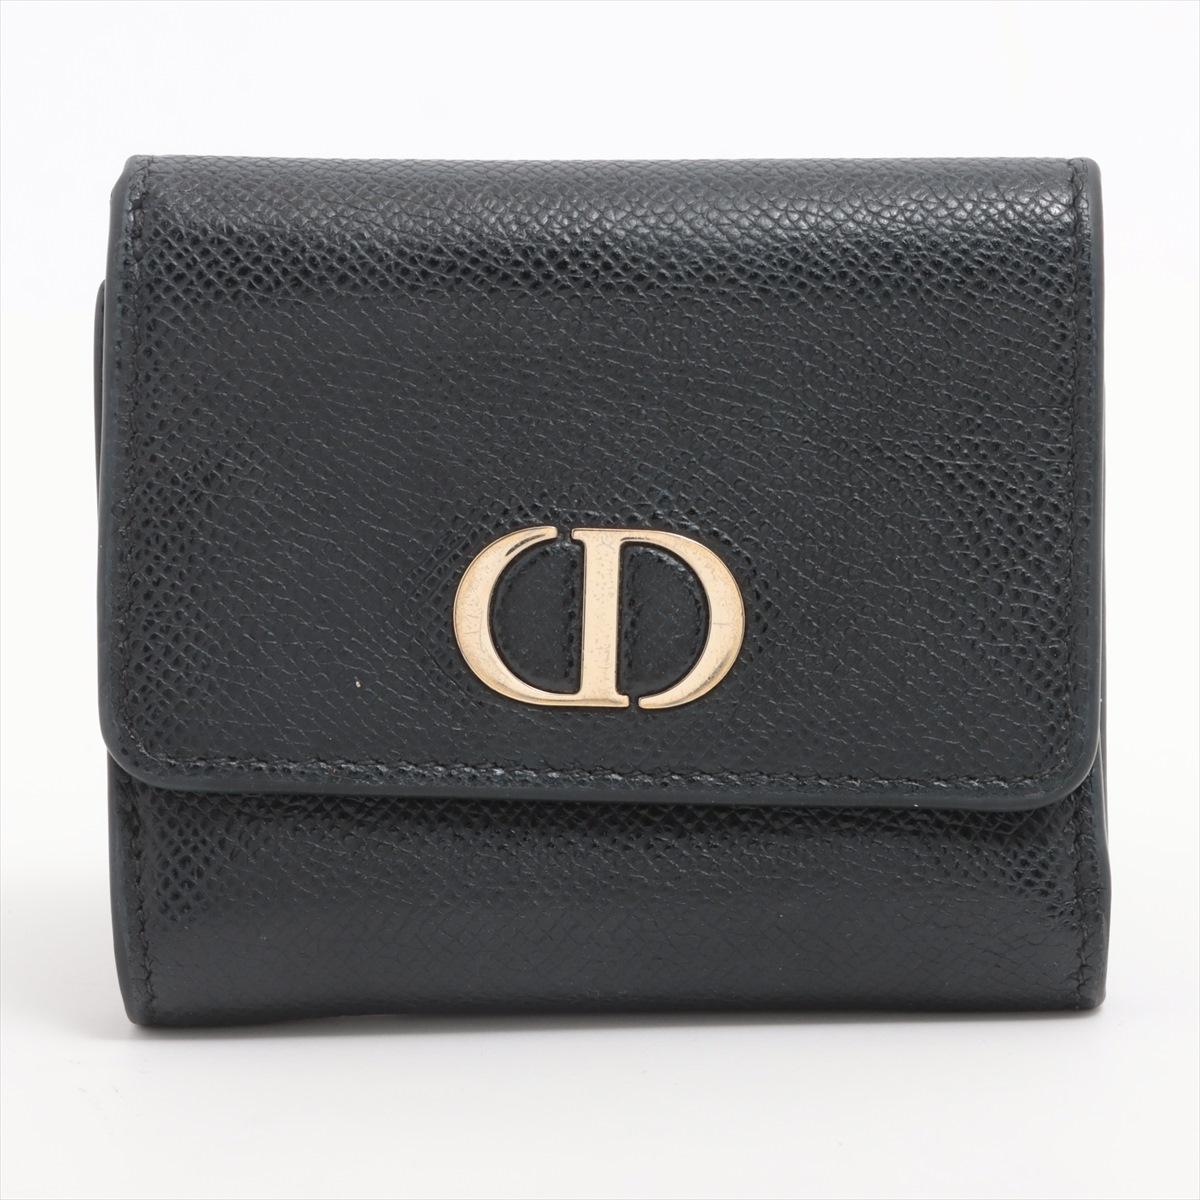 Le portefeuille trifold en cuir Dior Montaigne en noir est un accessoire élégant et sophistiqué qui reflète le design intemporel de Dior. Confectionné en cuir lisse noir, ce portefeuille affiche une esthétique minimaliste et raffinée. Le design